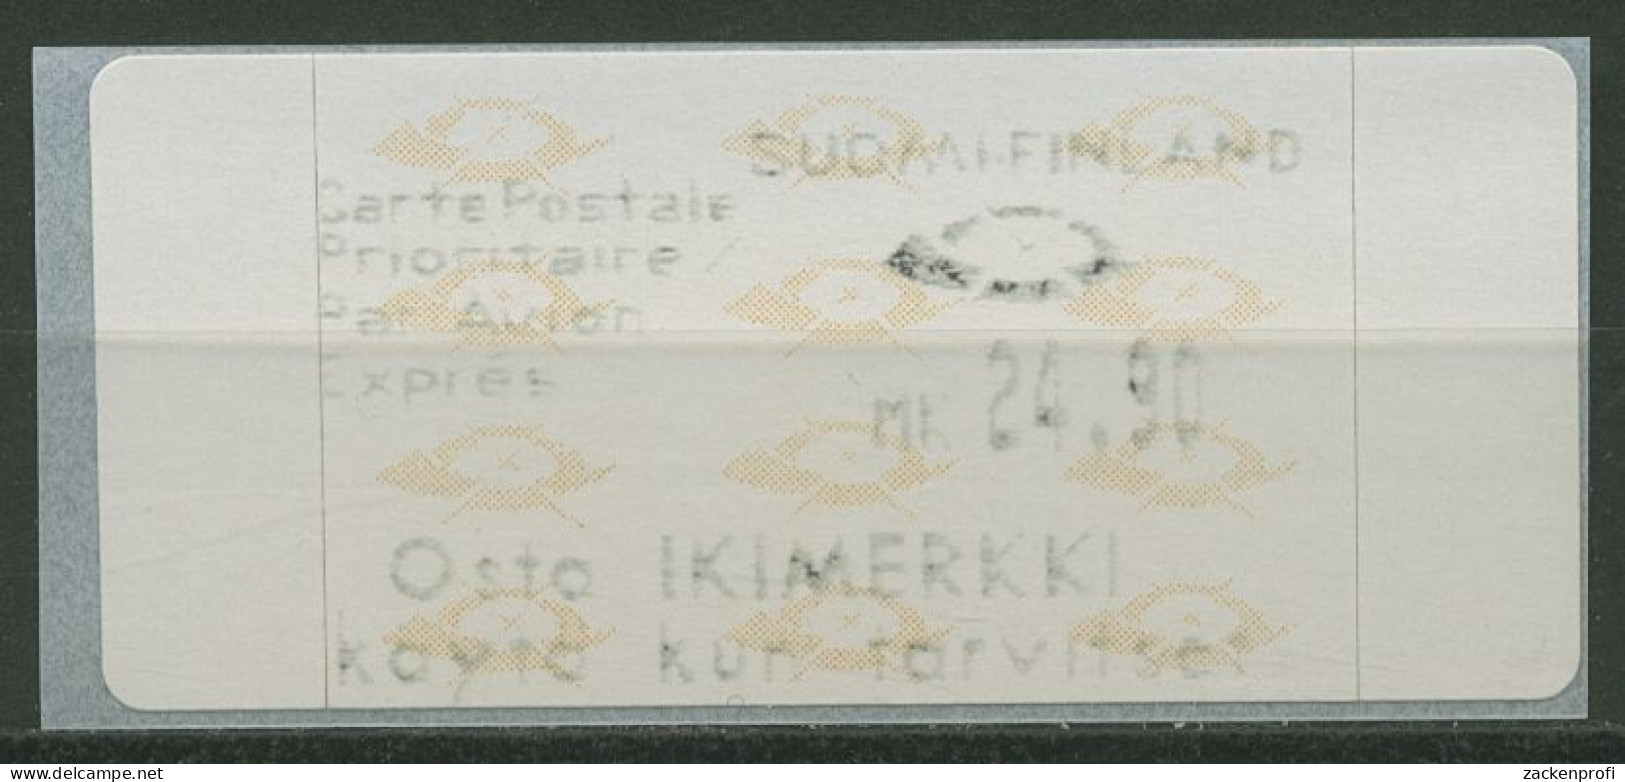 Finnland ATM 1992 Posthörner Einzelwert ATM 12.4 Z4 Postfrisch - Machine Labels [ATM]